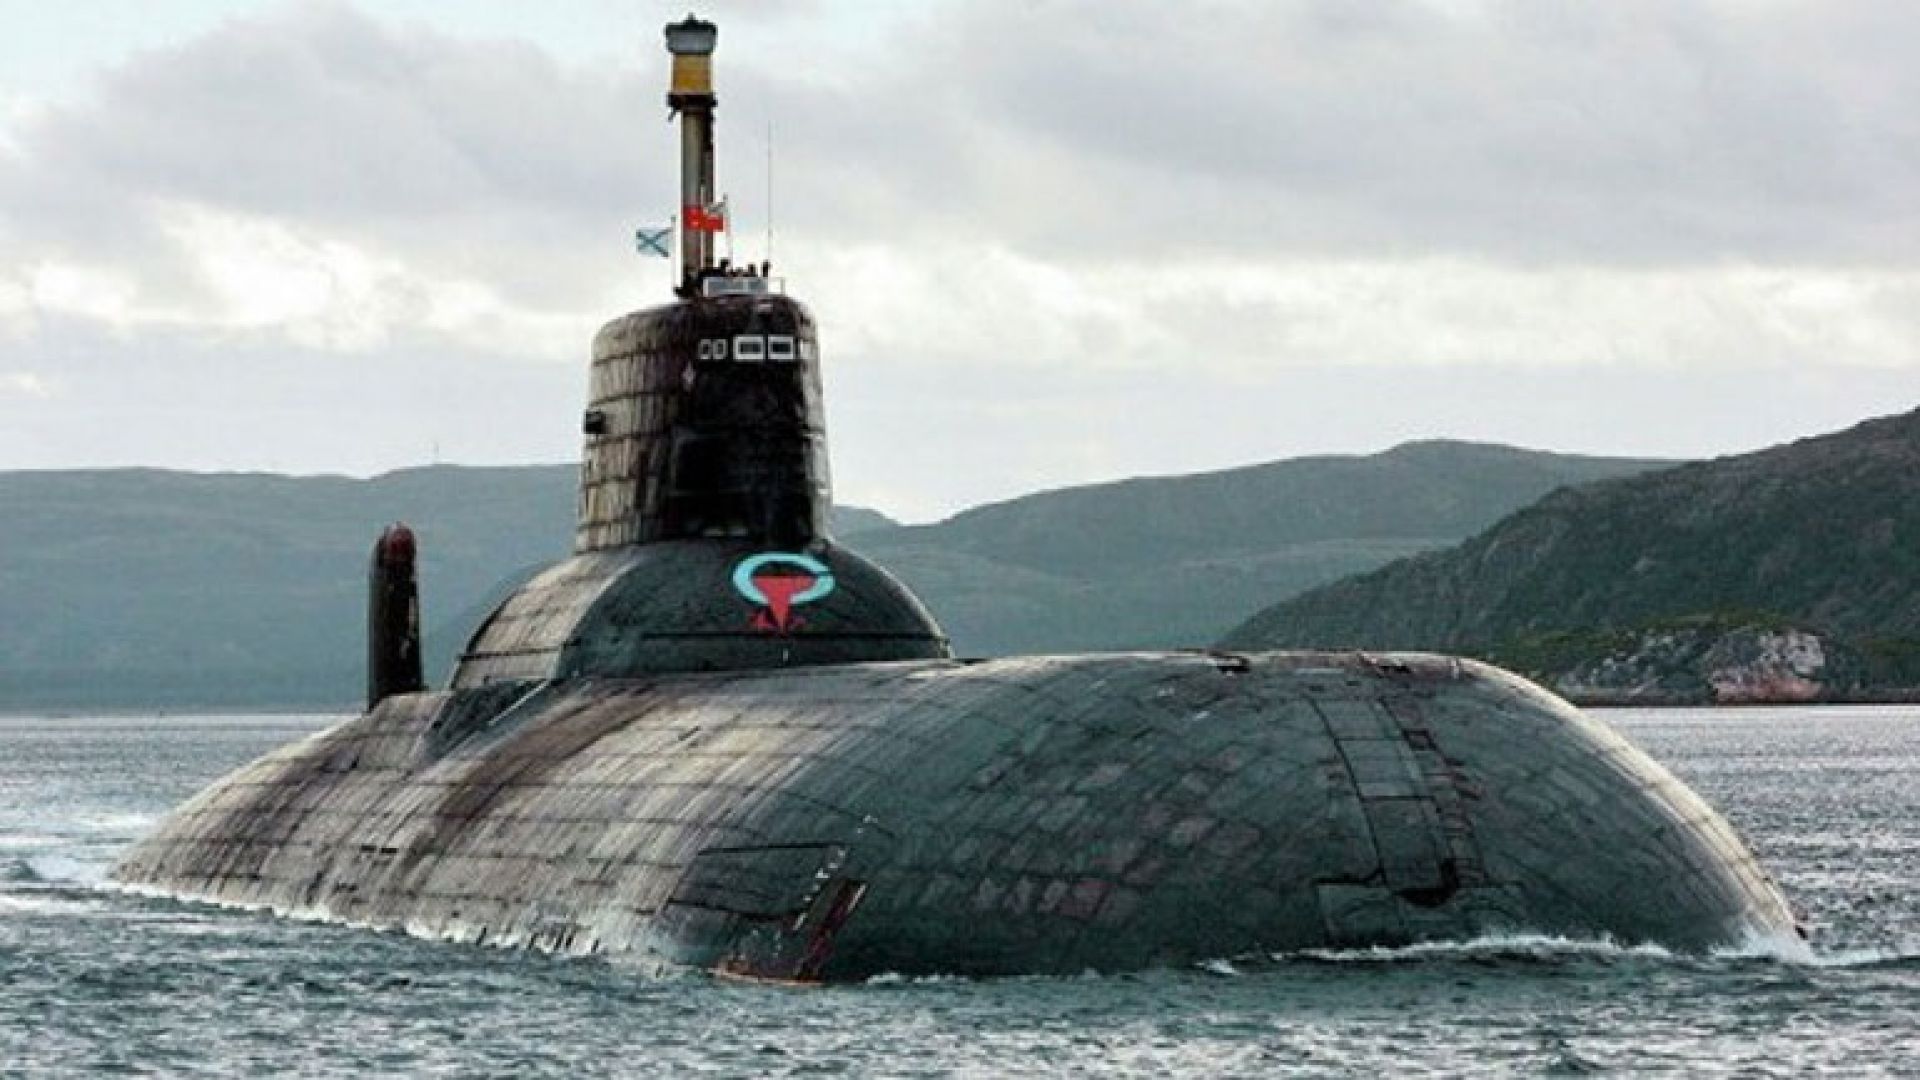 Εντάχθηκε στο Πολεμικό Ναυτικό της Ρωσίας το πλέον σύγχρονο πυρηνικό υποβρύχιο